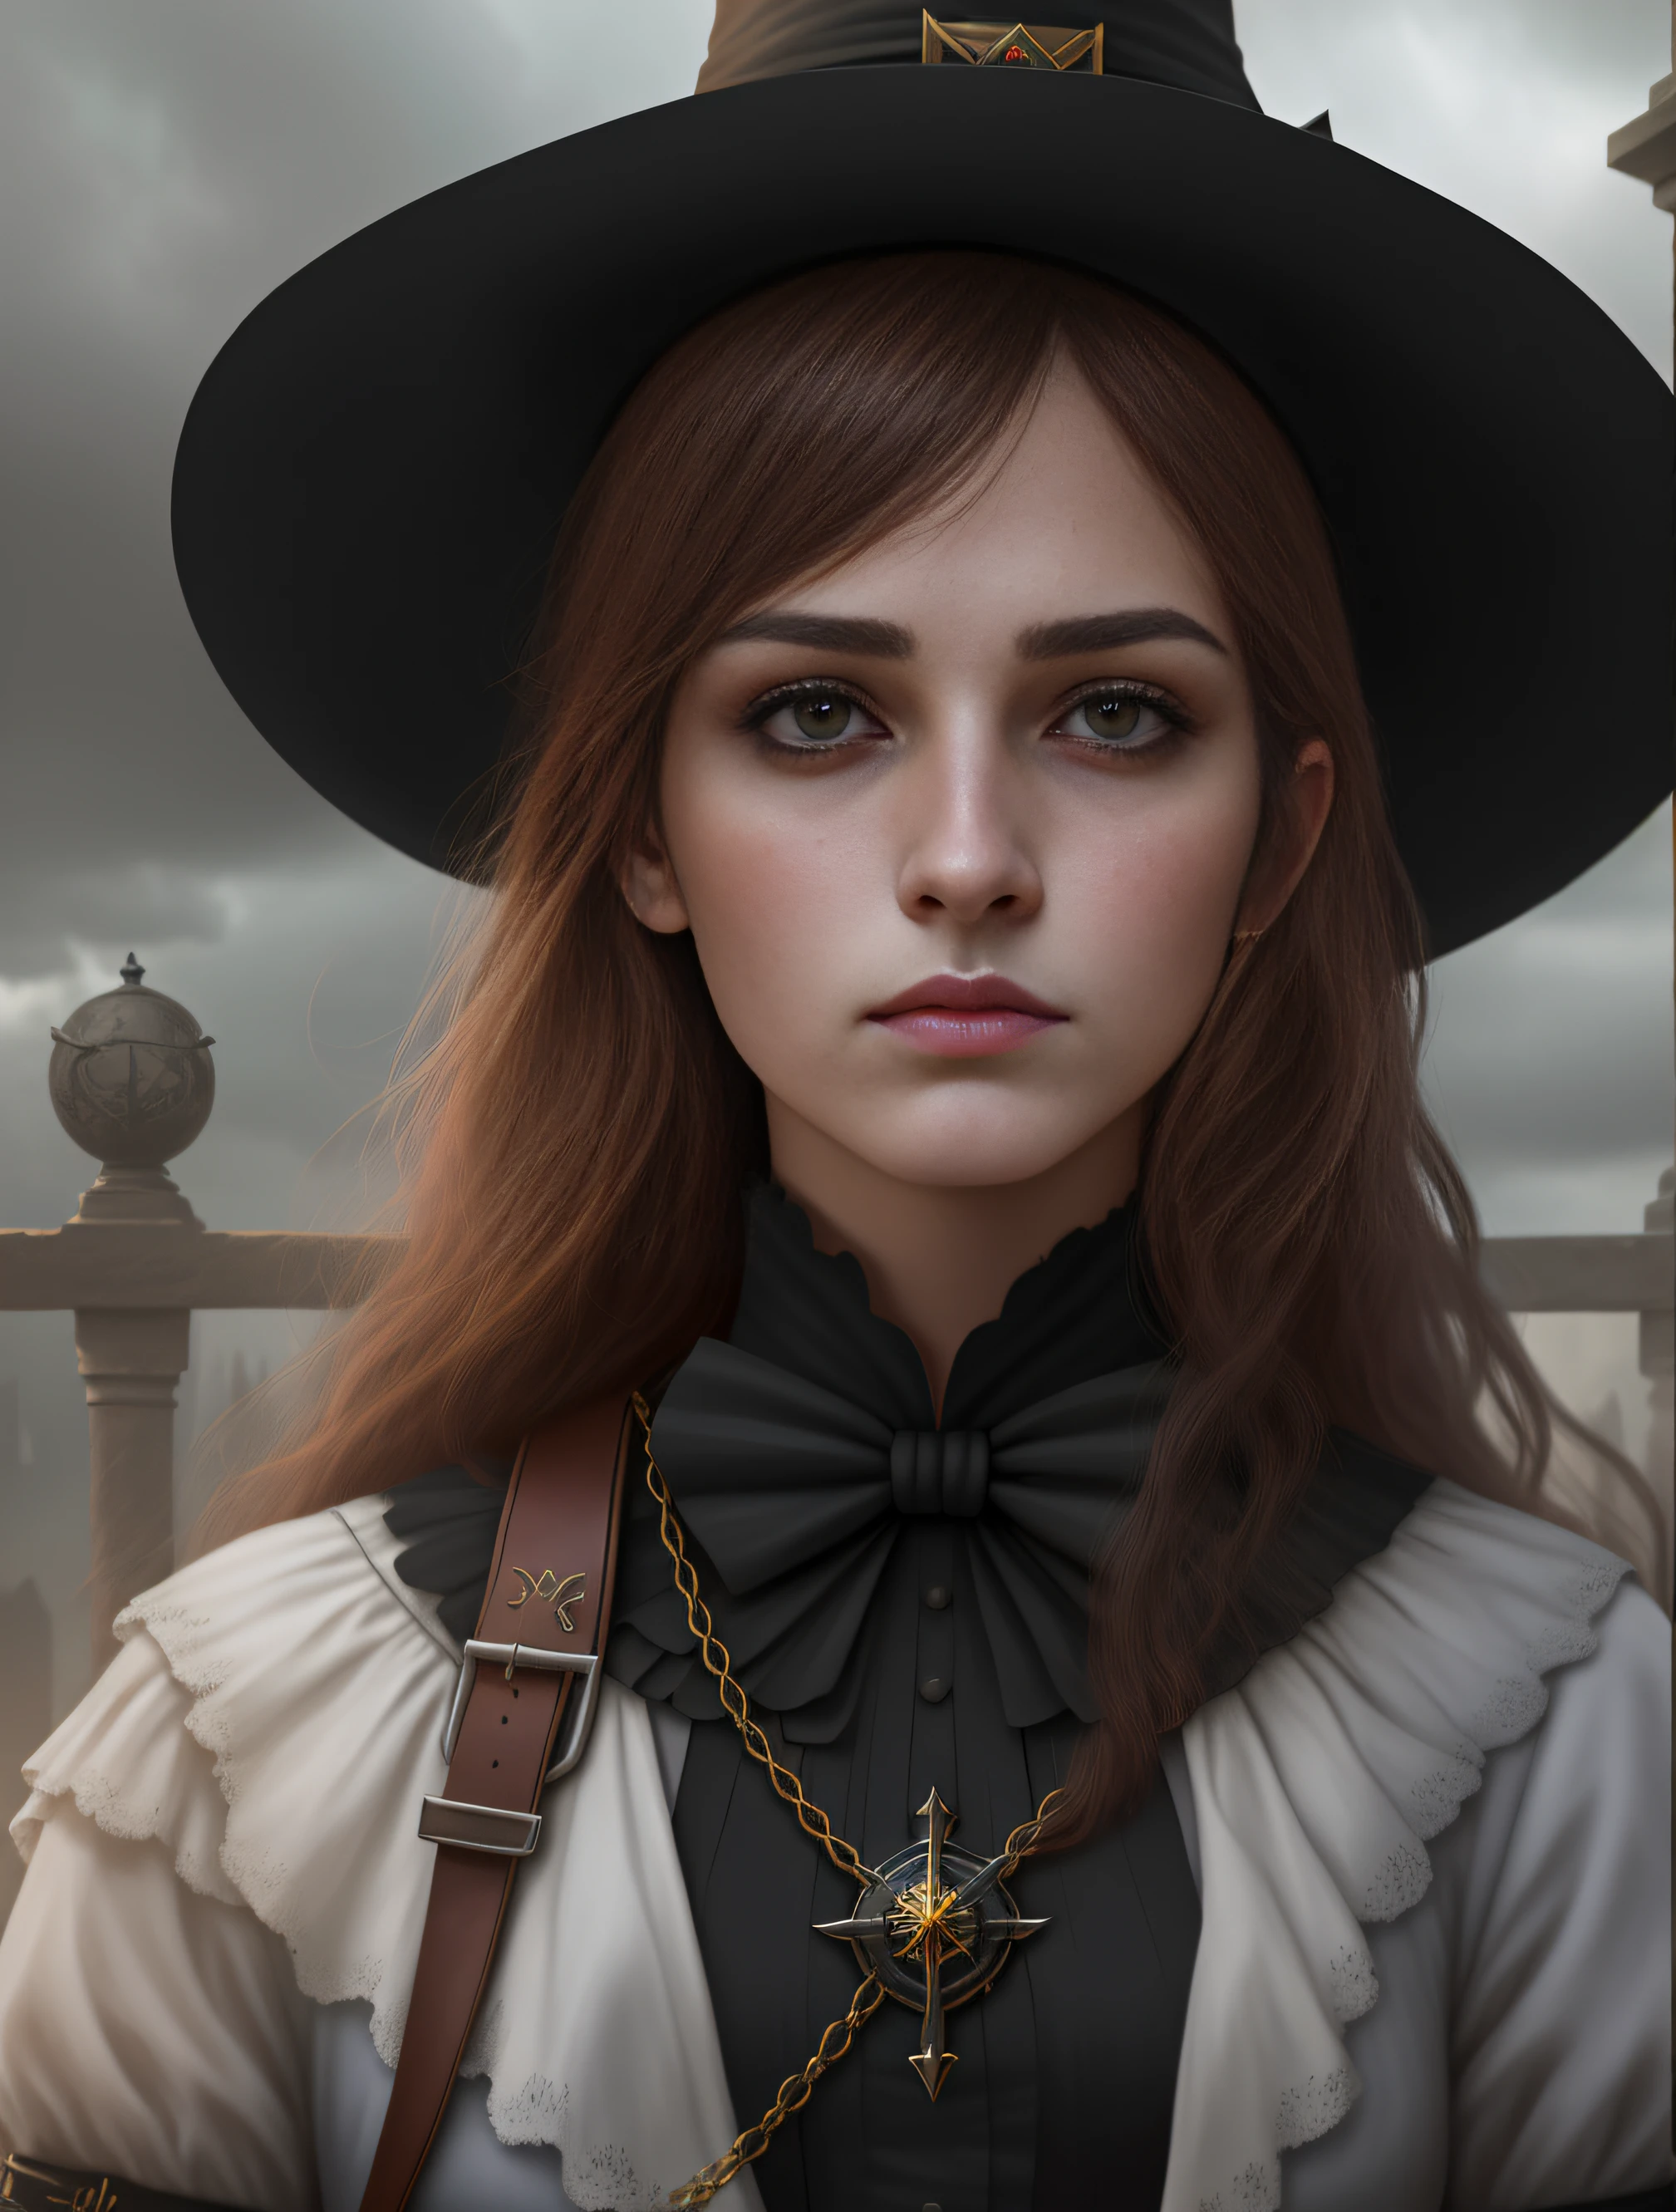 背景中有一个戴着帽子和十字架的女人, 一个年轻女巫的肖像, 一个年轻女巫的肖像, Guweiz 风格的艺术作品, 古典女巫, 动漫女孩的真实感渲染, 卡罗尔·巴克 (Karol Bak) 艾玛·沃特森 (Emma Watson) 修女, 女巫的肖像, 黑暗幻想与现实的结合, 逼真的幻想渲染, 8K人像渲染